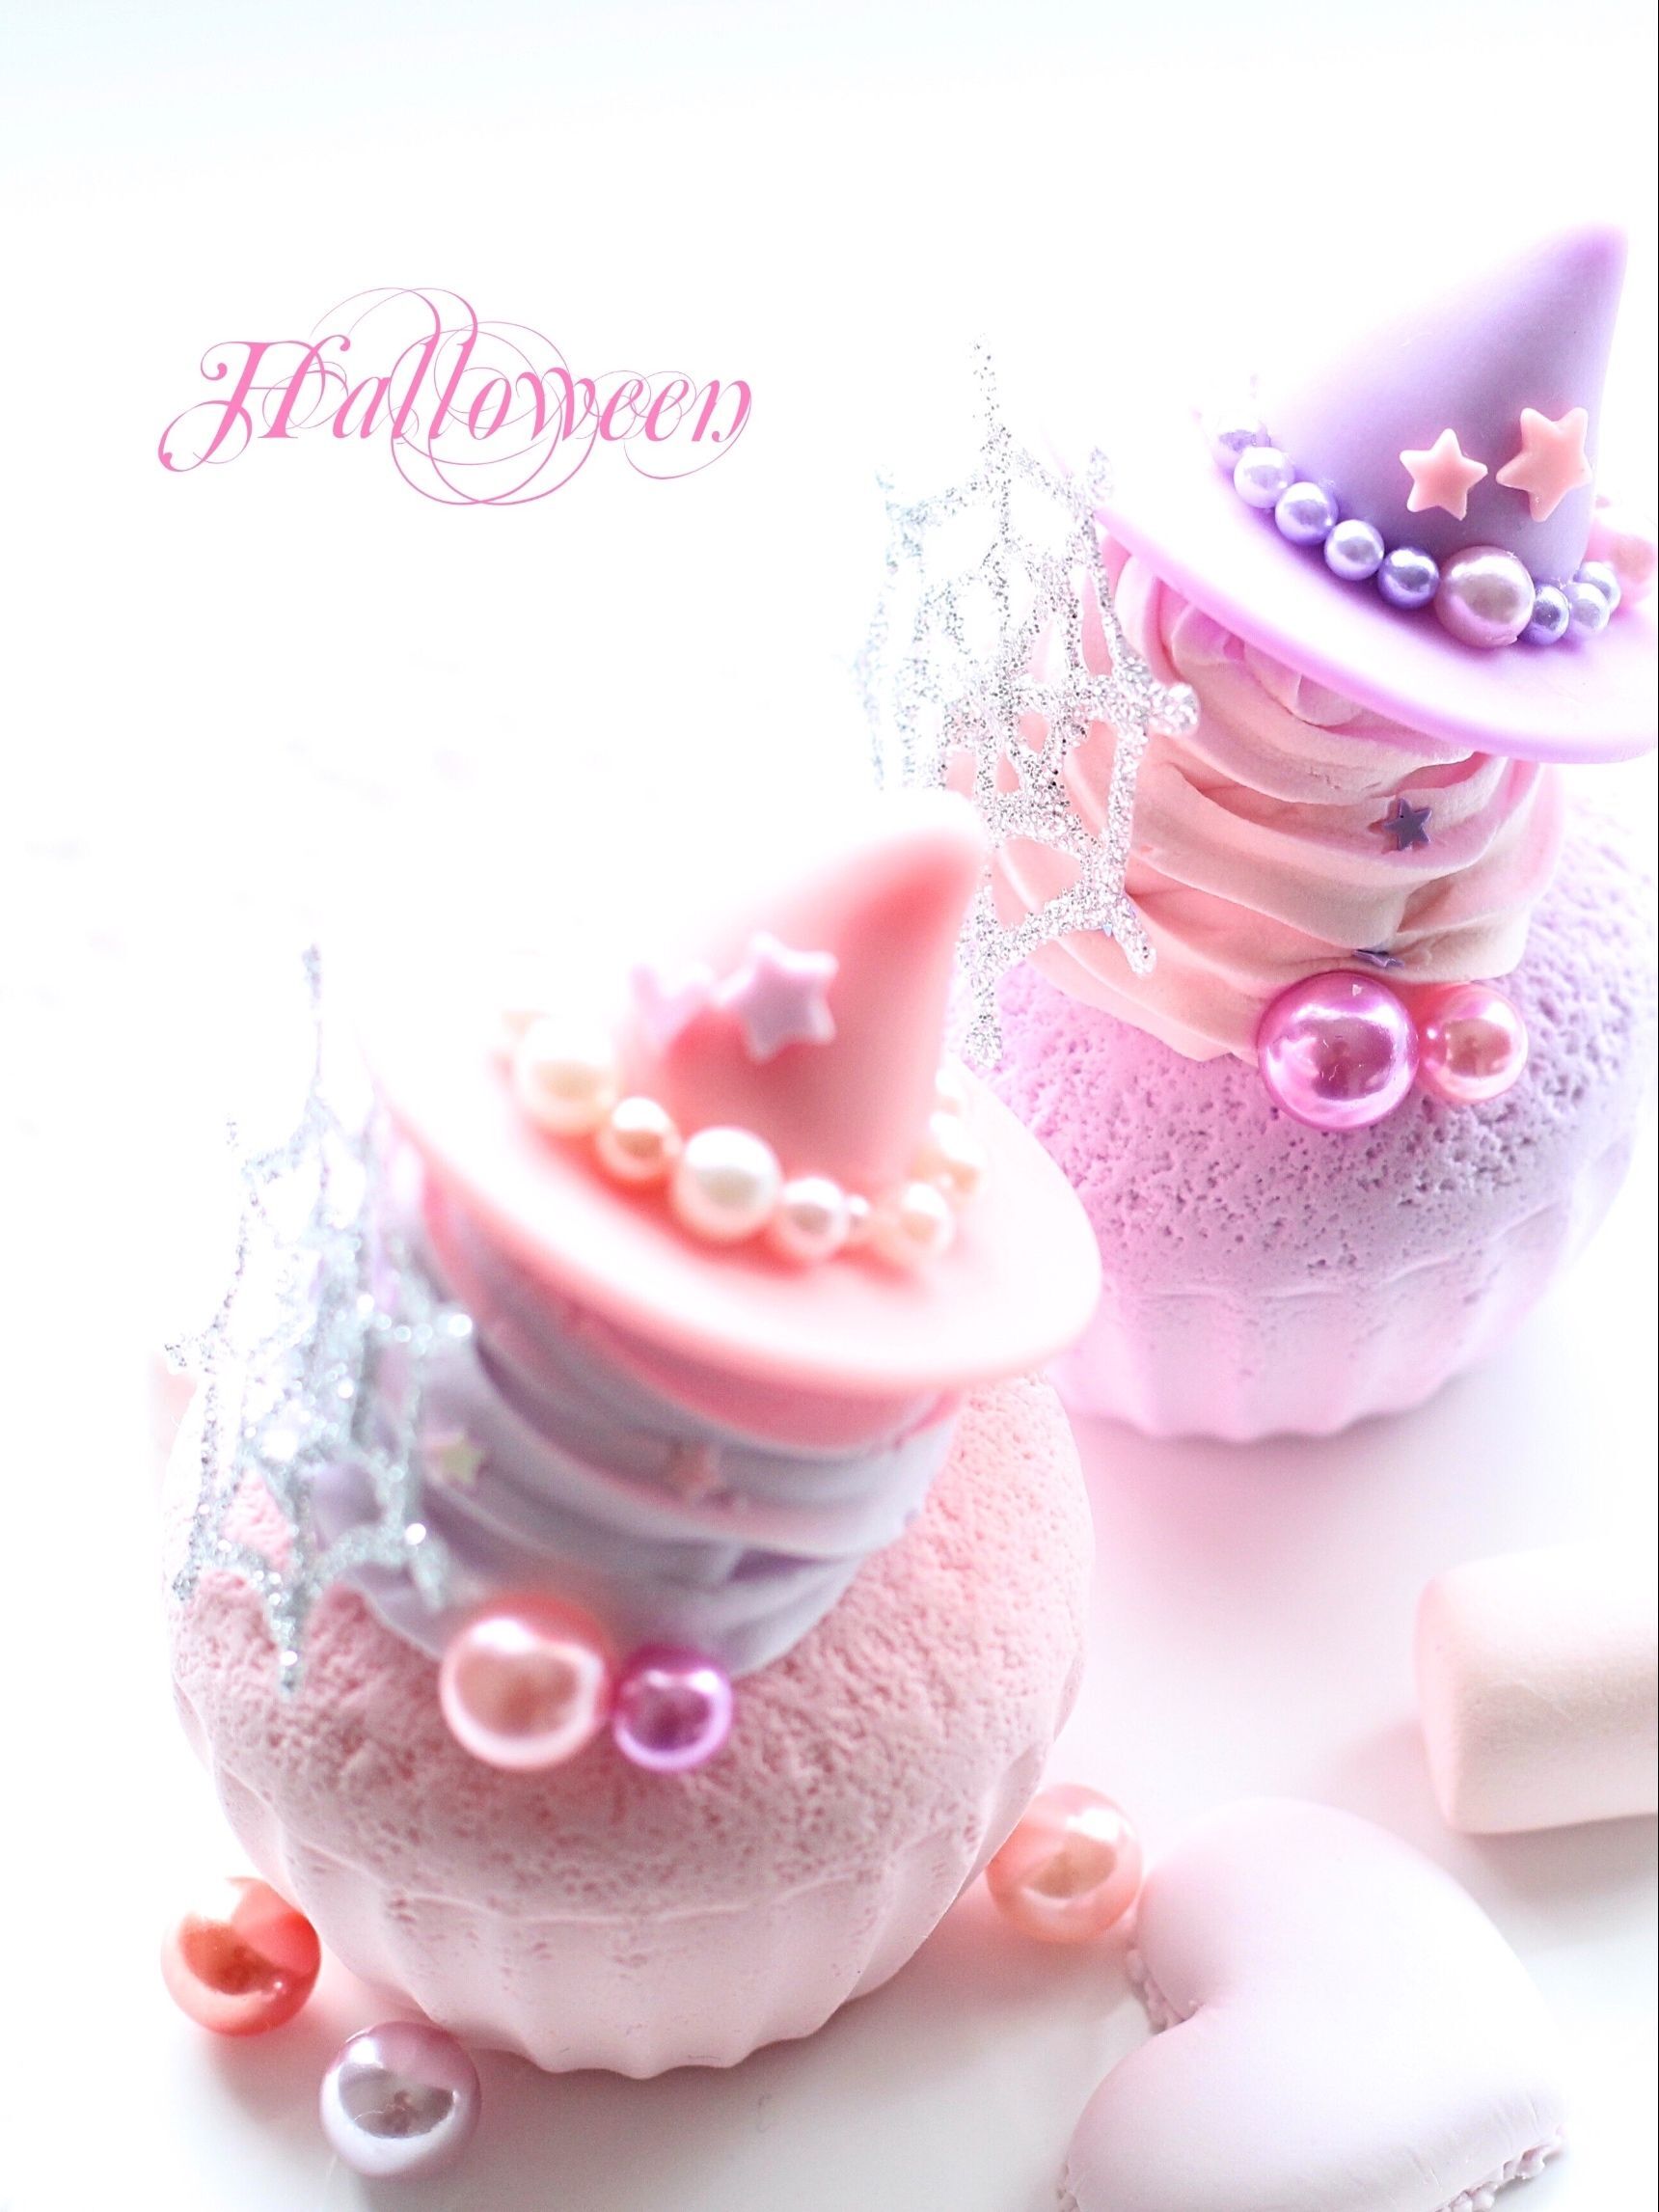 【試してみた】【100均材料で作るフェイクスイーツ】かわいい魔女のハロウィンカップケーキ♡